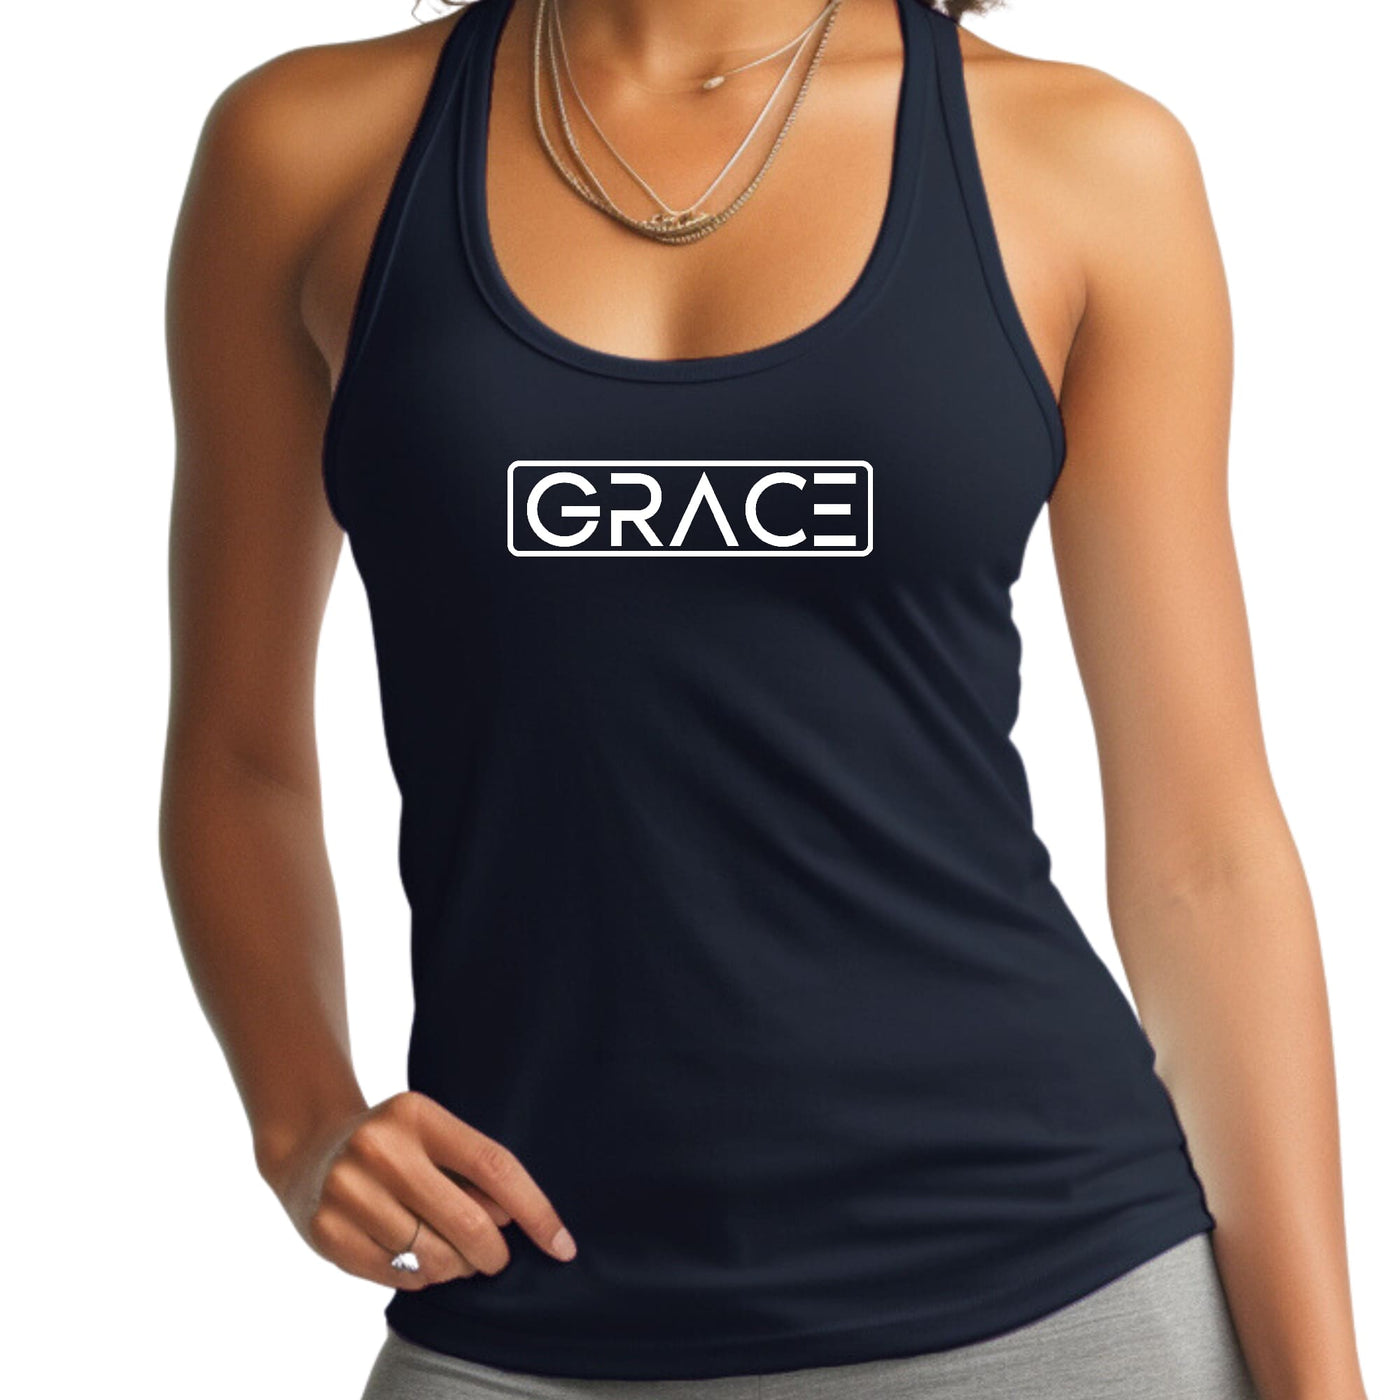 Womens Tank Top Fitness T - shirt Grace - Tops